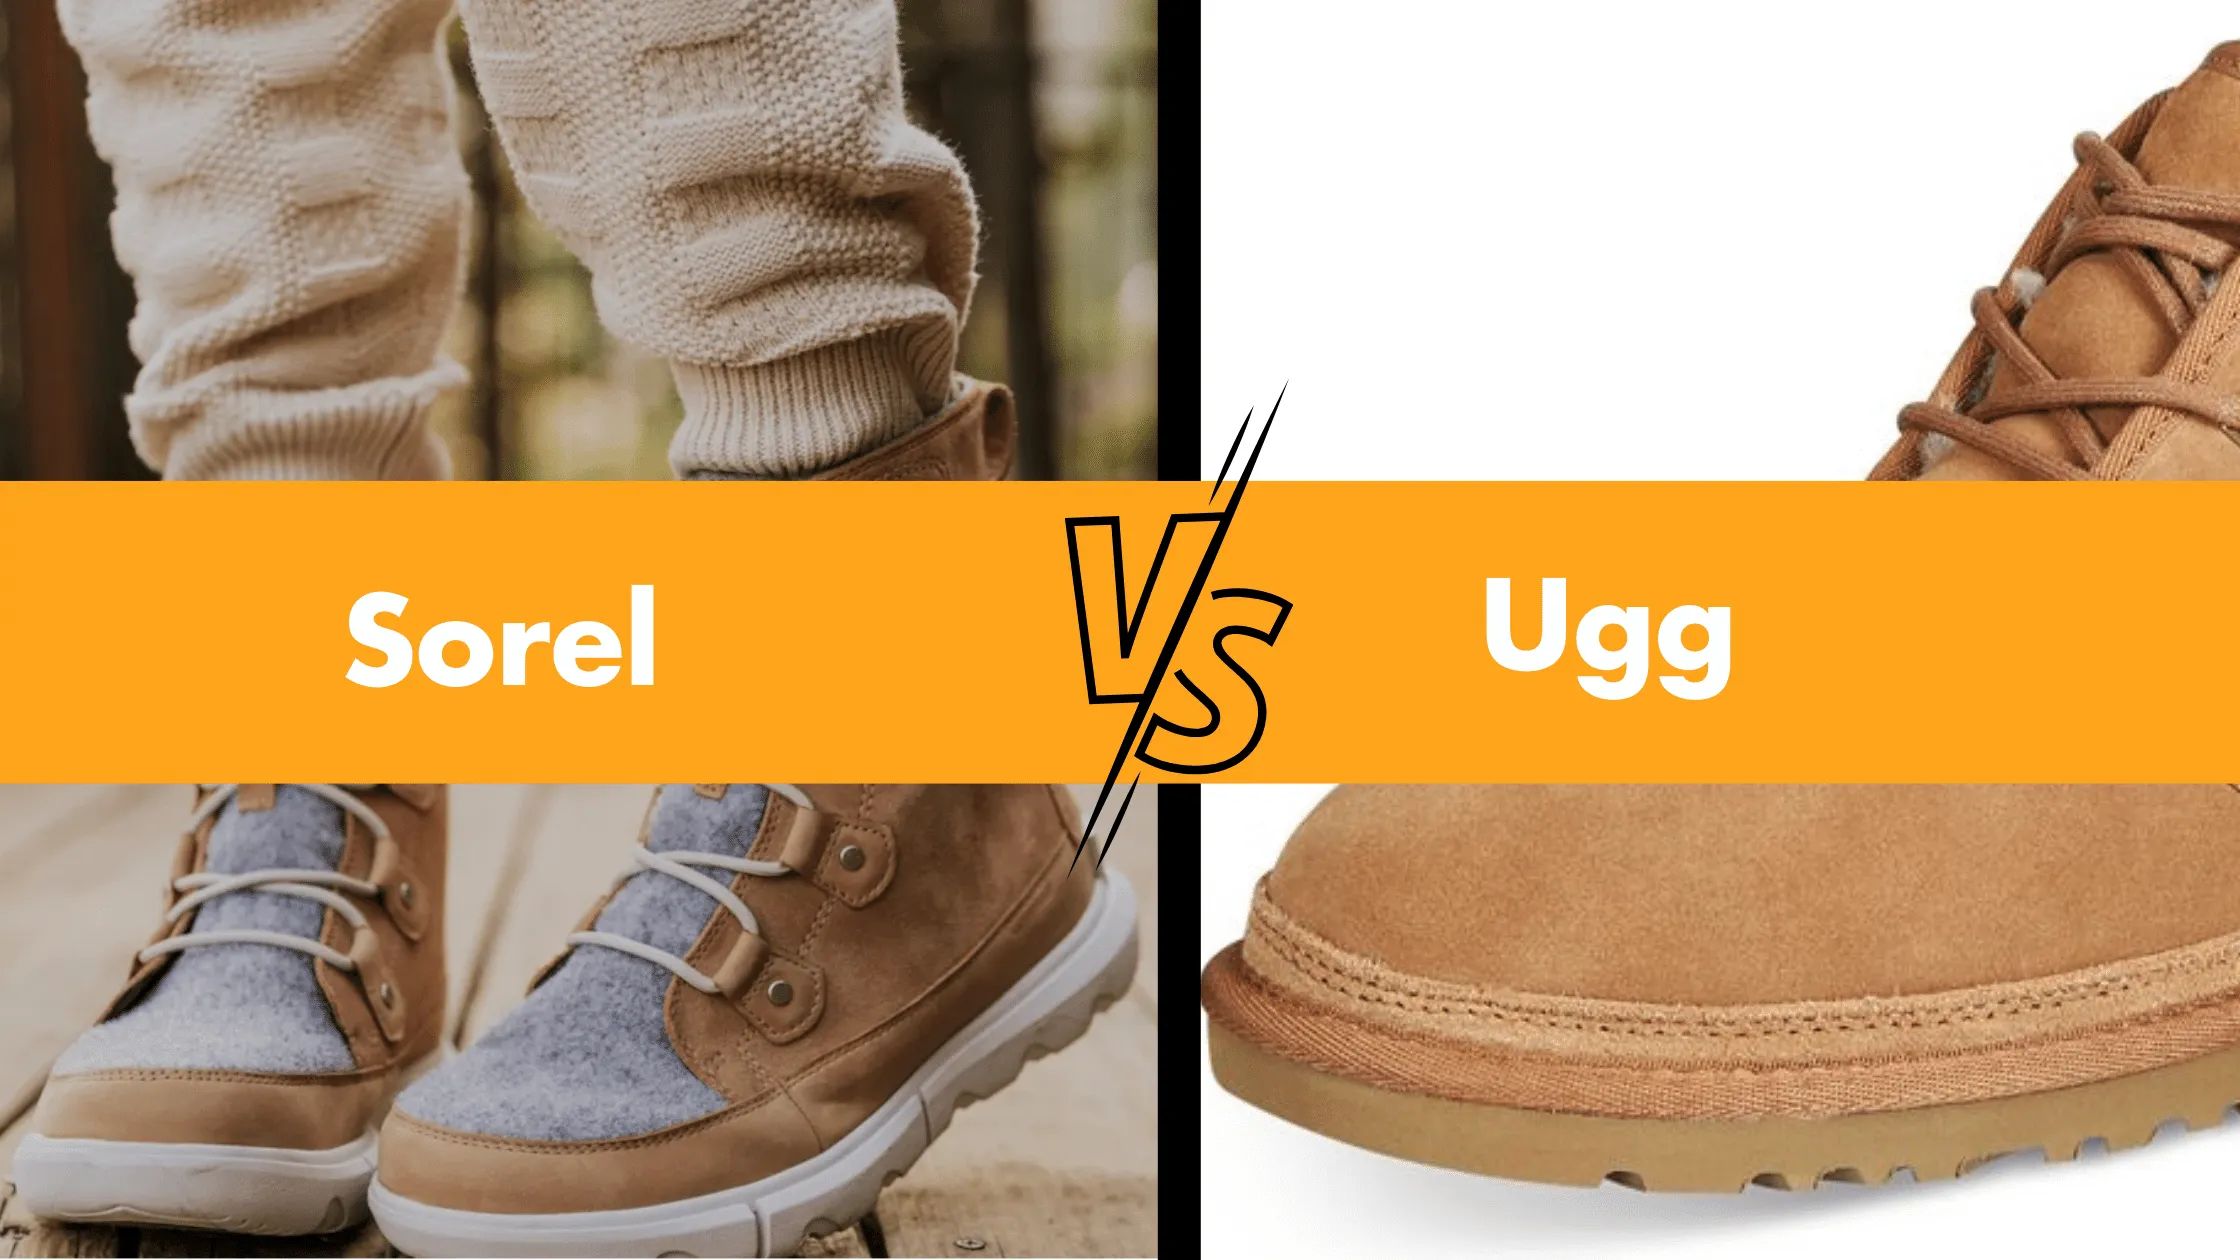 Sorel VS Ugg